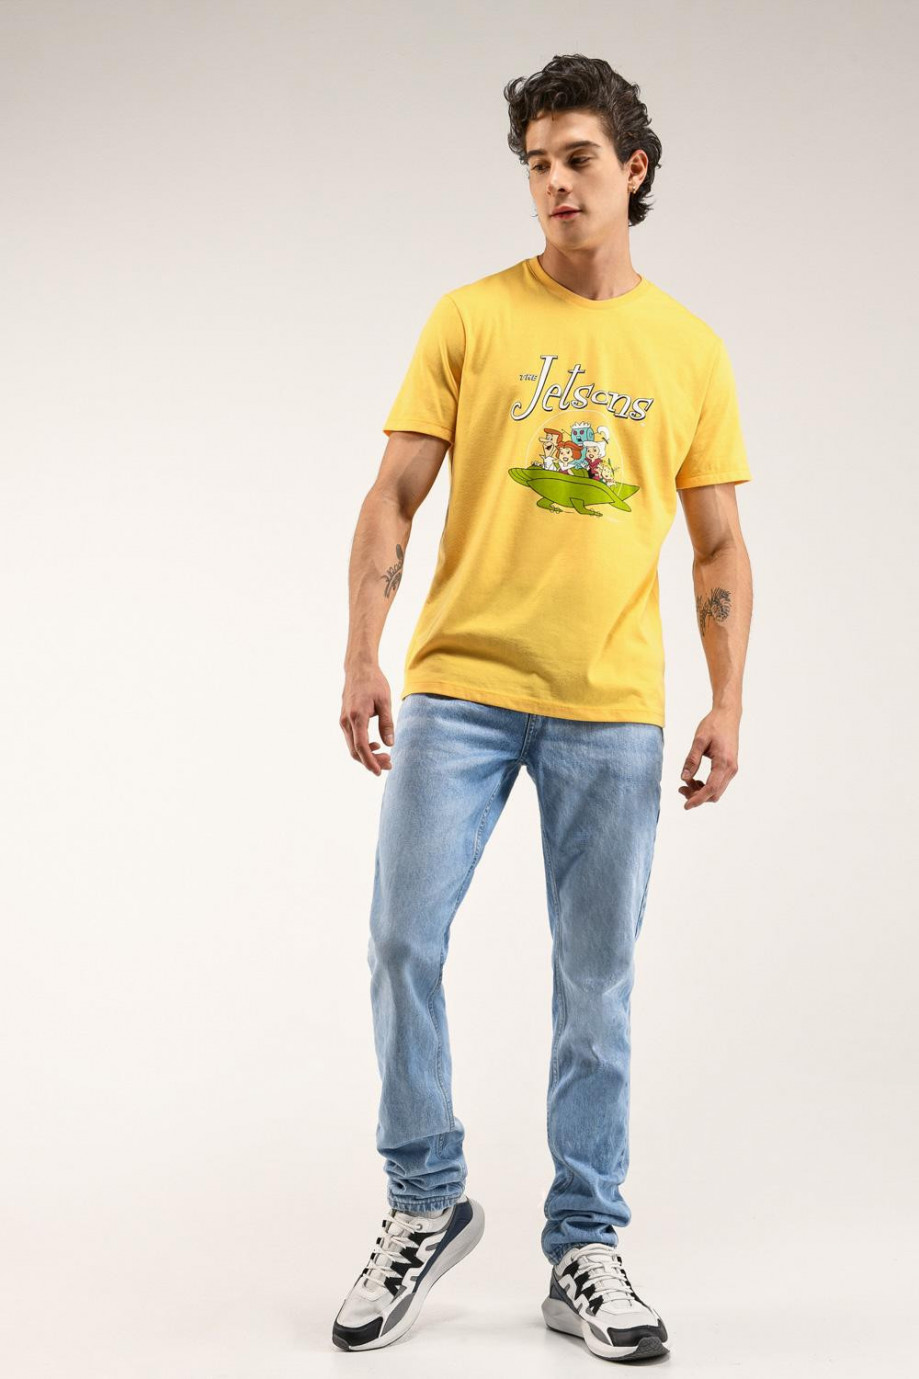 Camiseta manga corta, estampado de Los Supersonicos